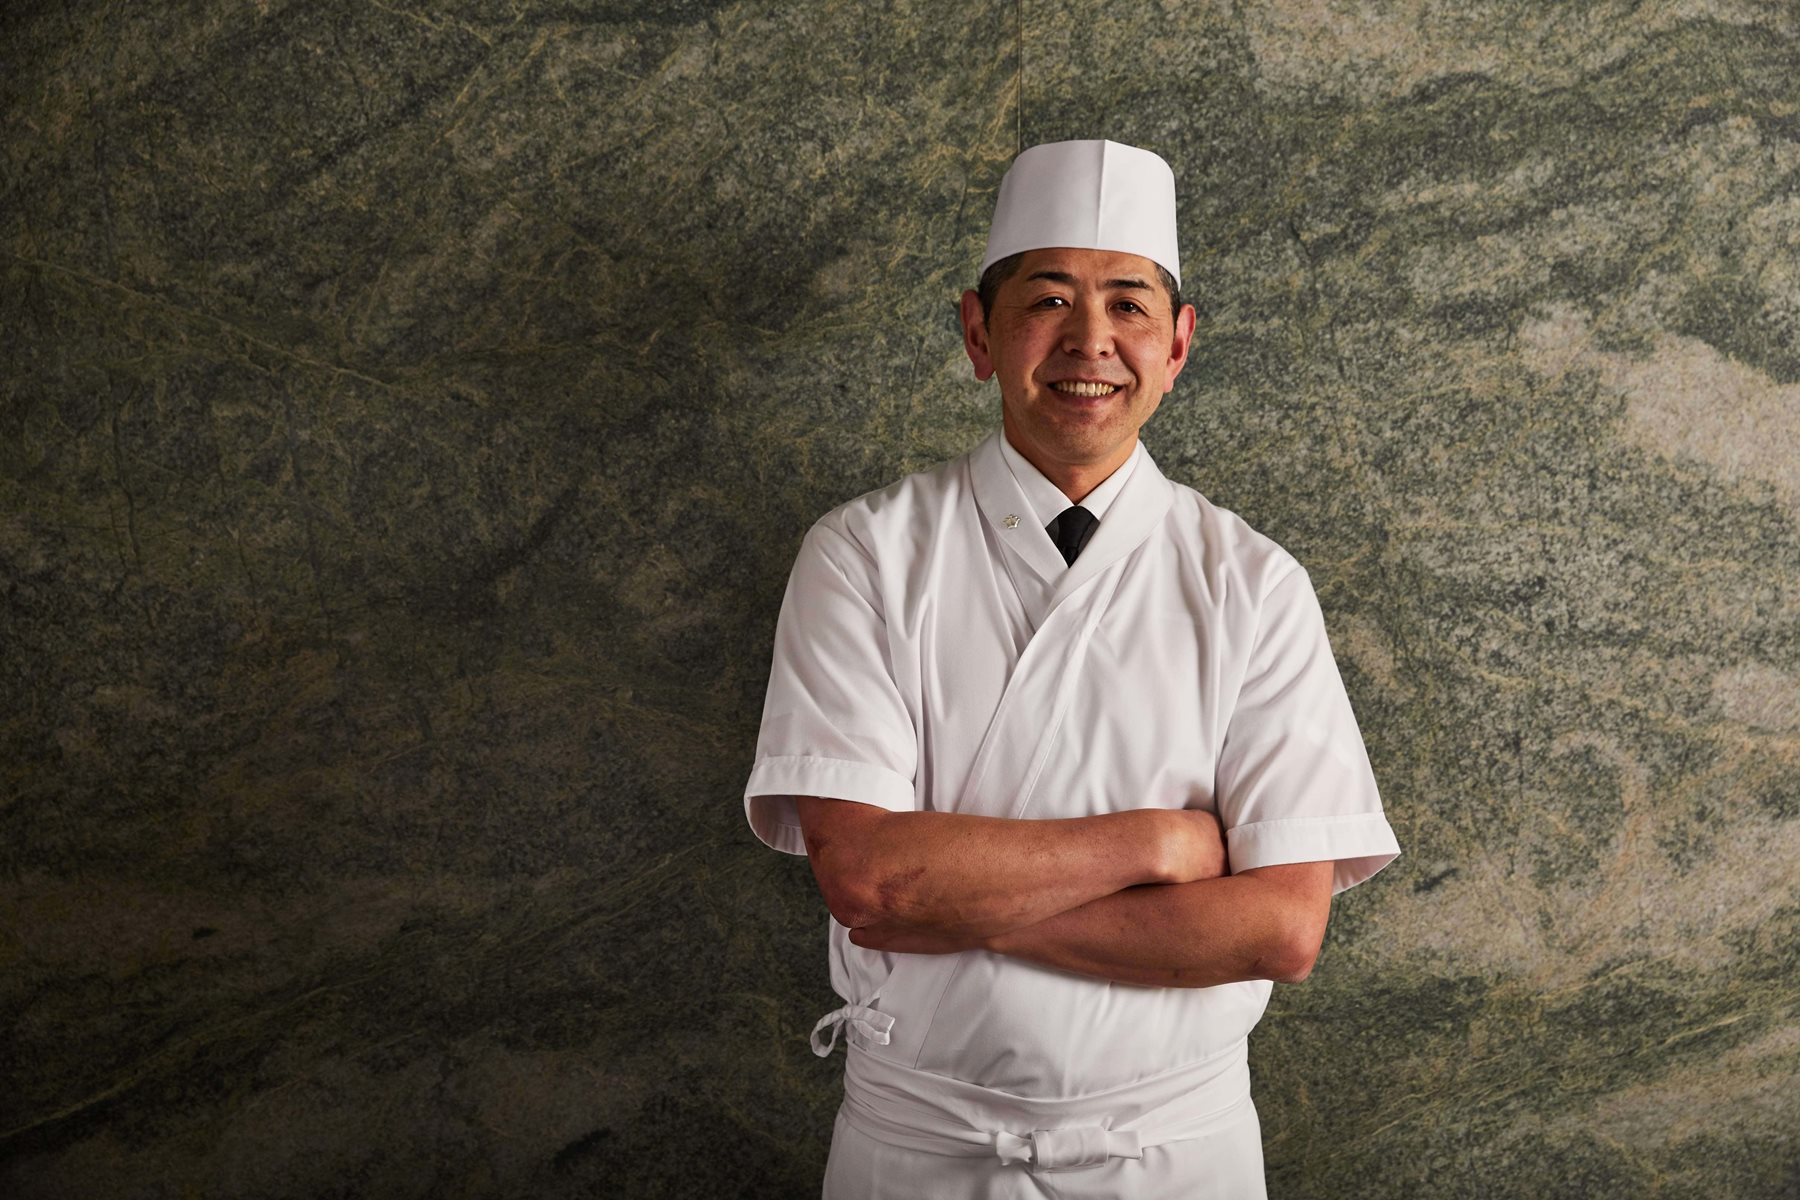 Japanese chef Yoshii
